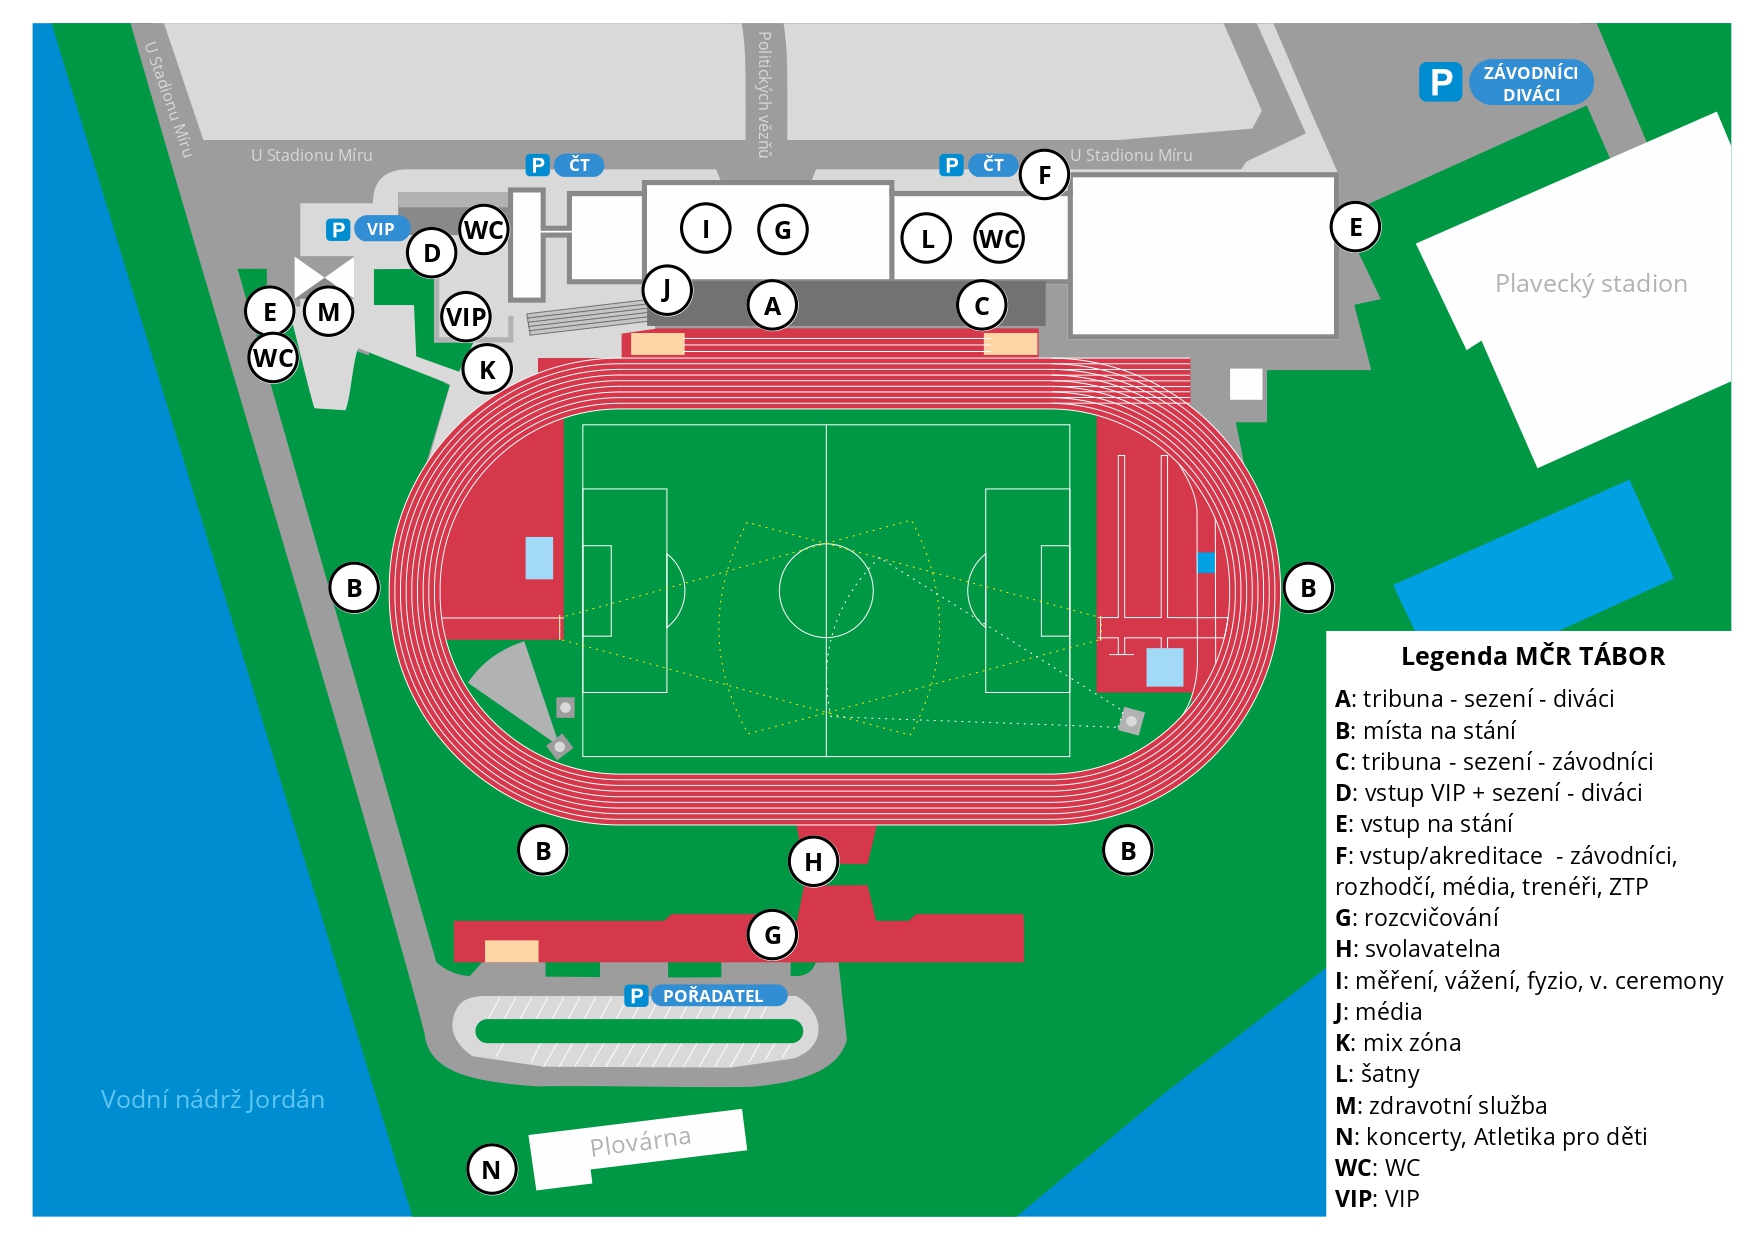 Plánek stadionu pro MČR